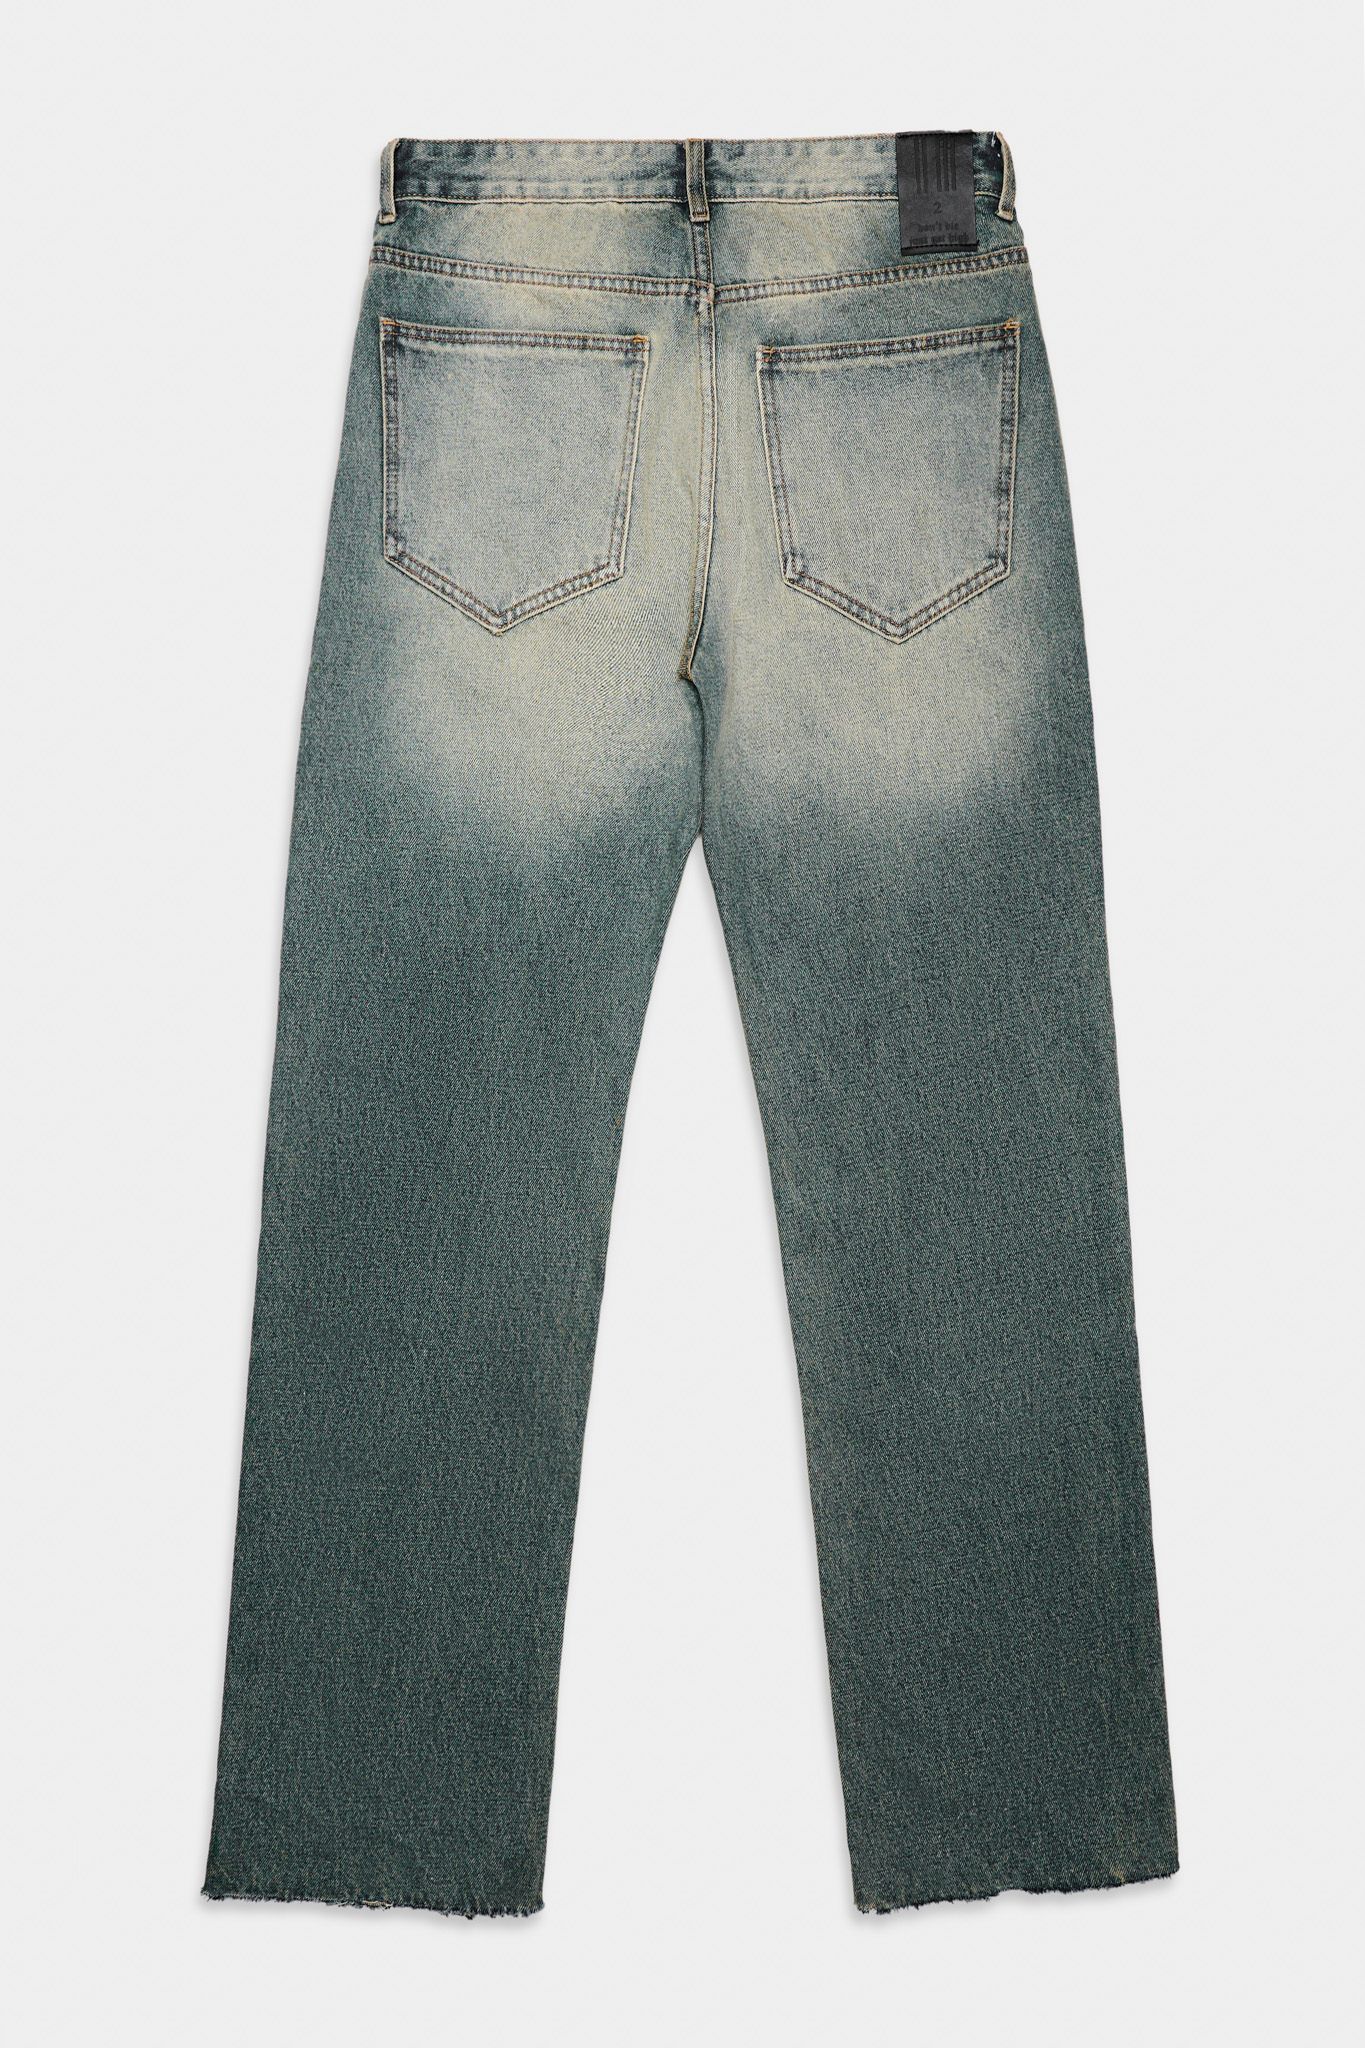  23'ST Jeans / Paint-Splattered 